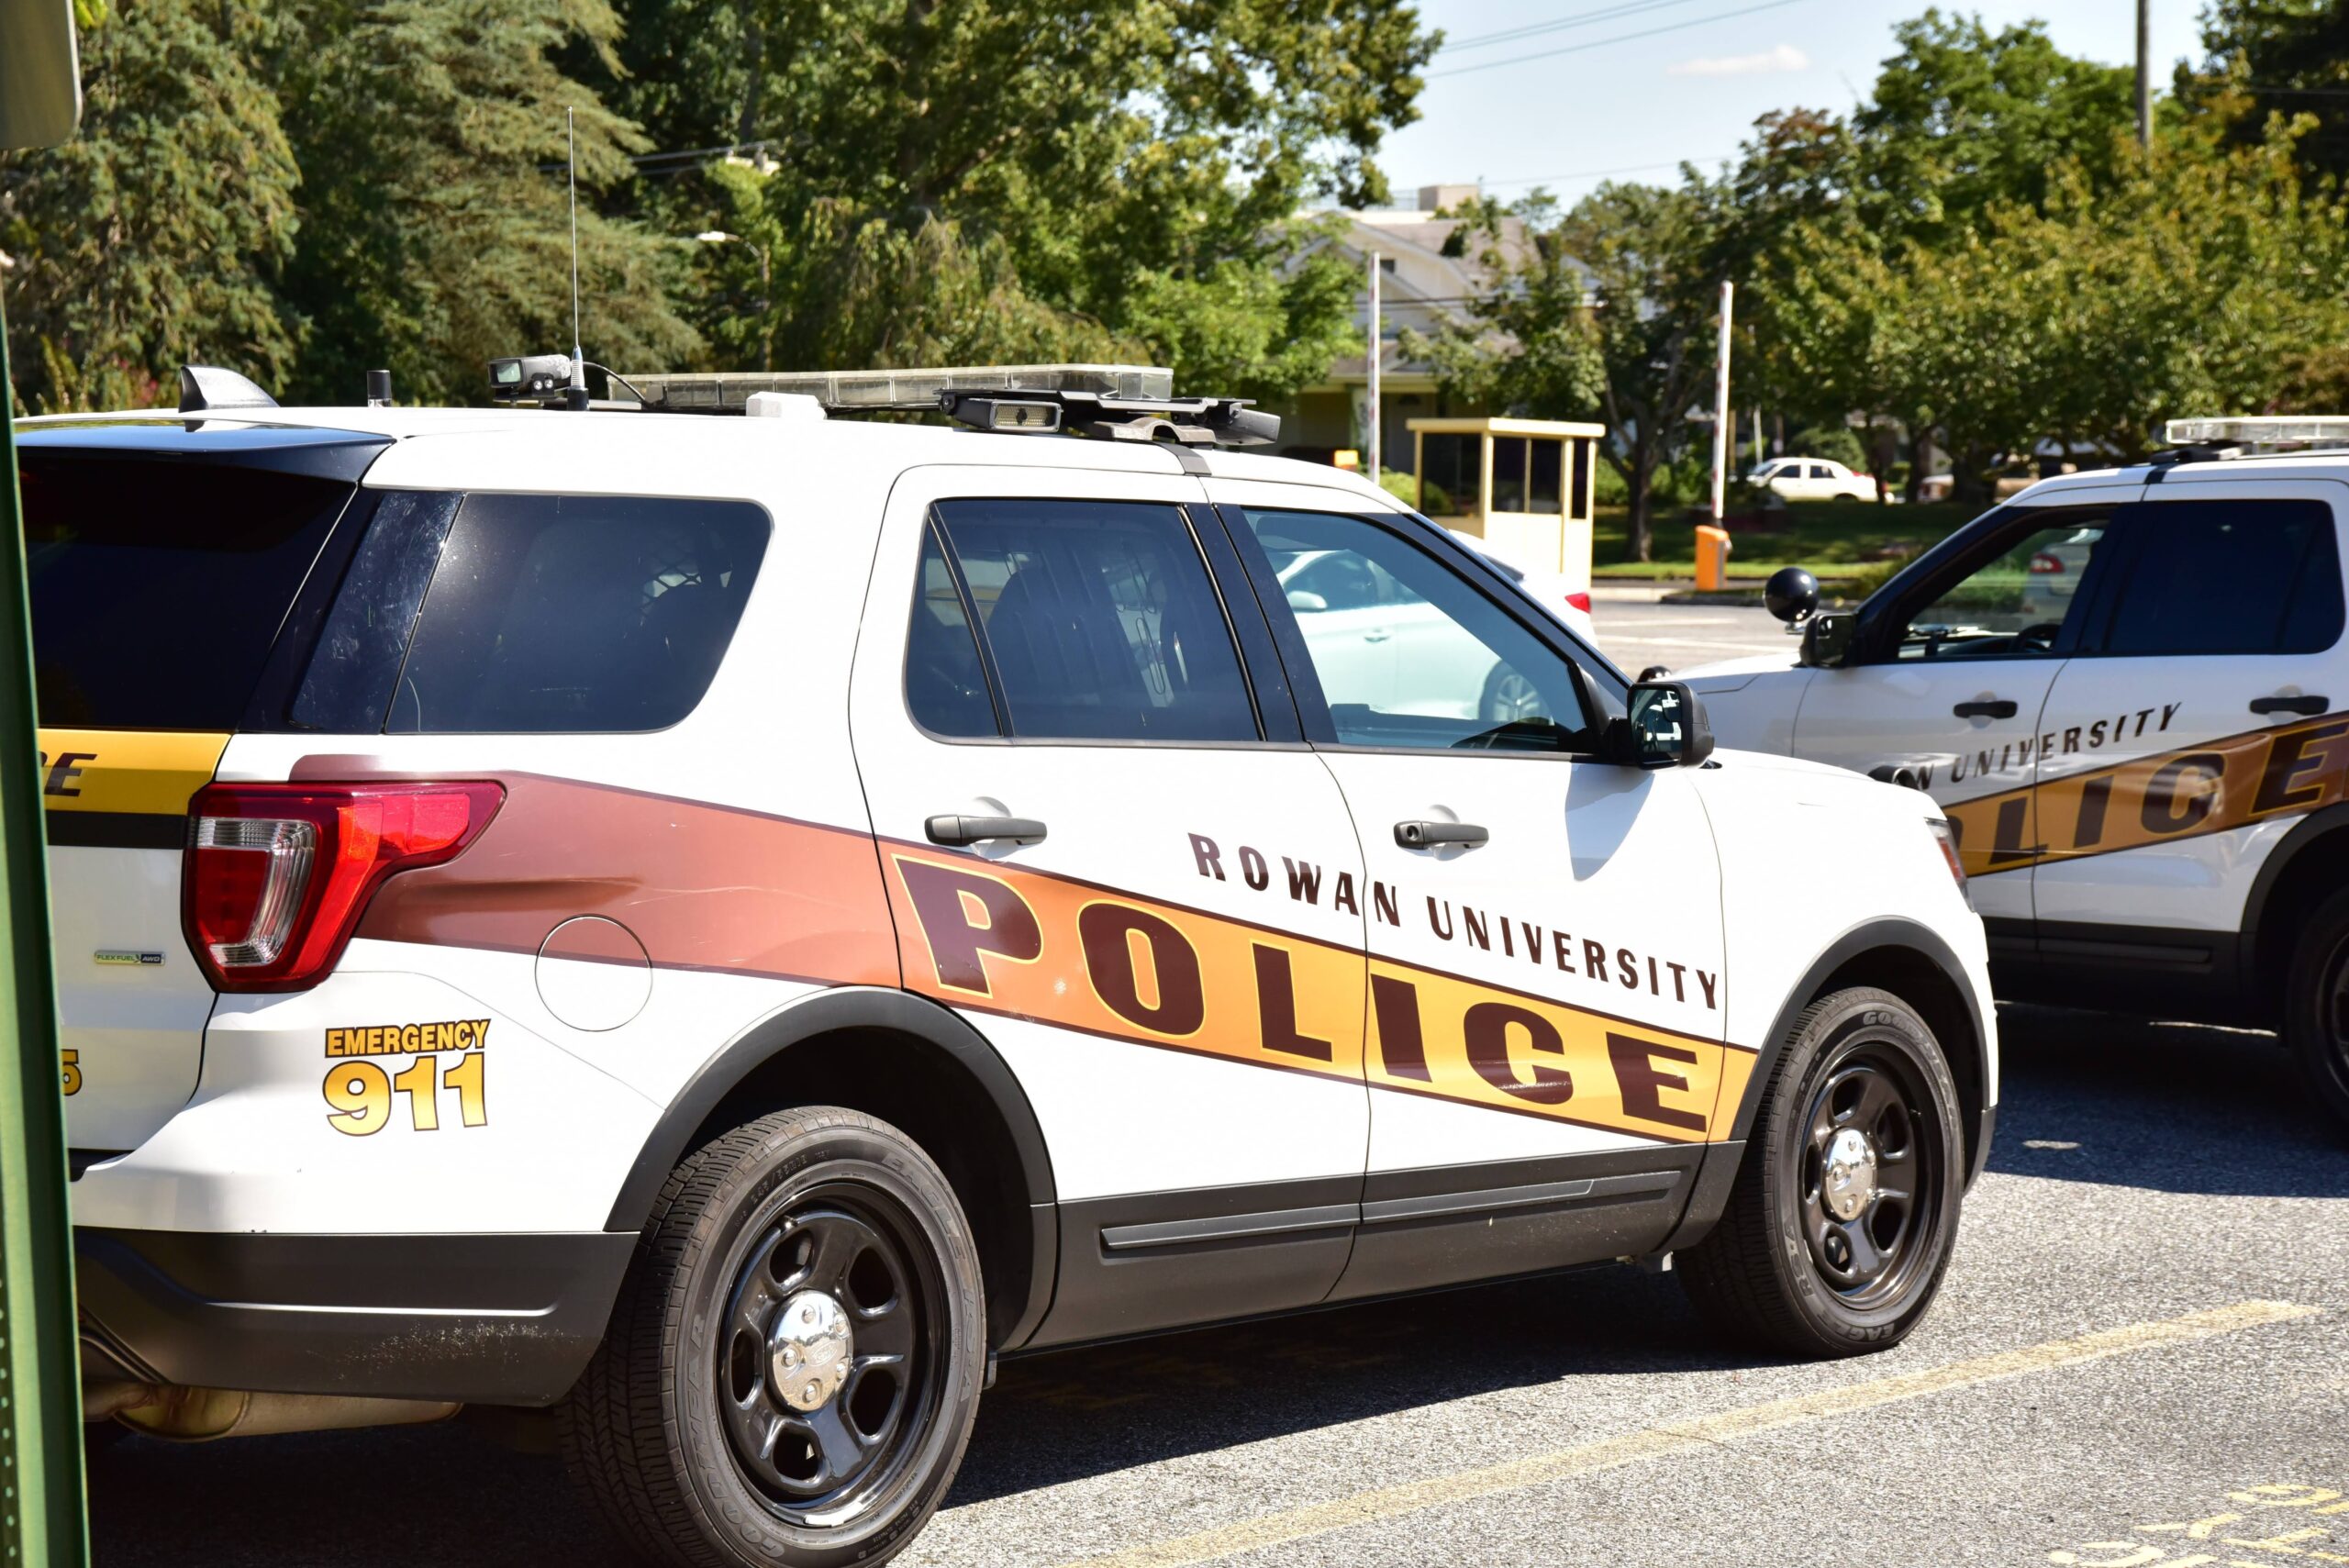 San Antonio police: Weekend's shootings were not random